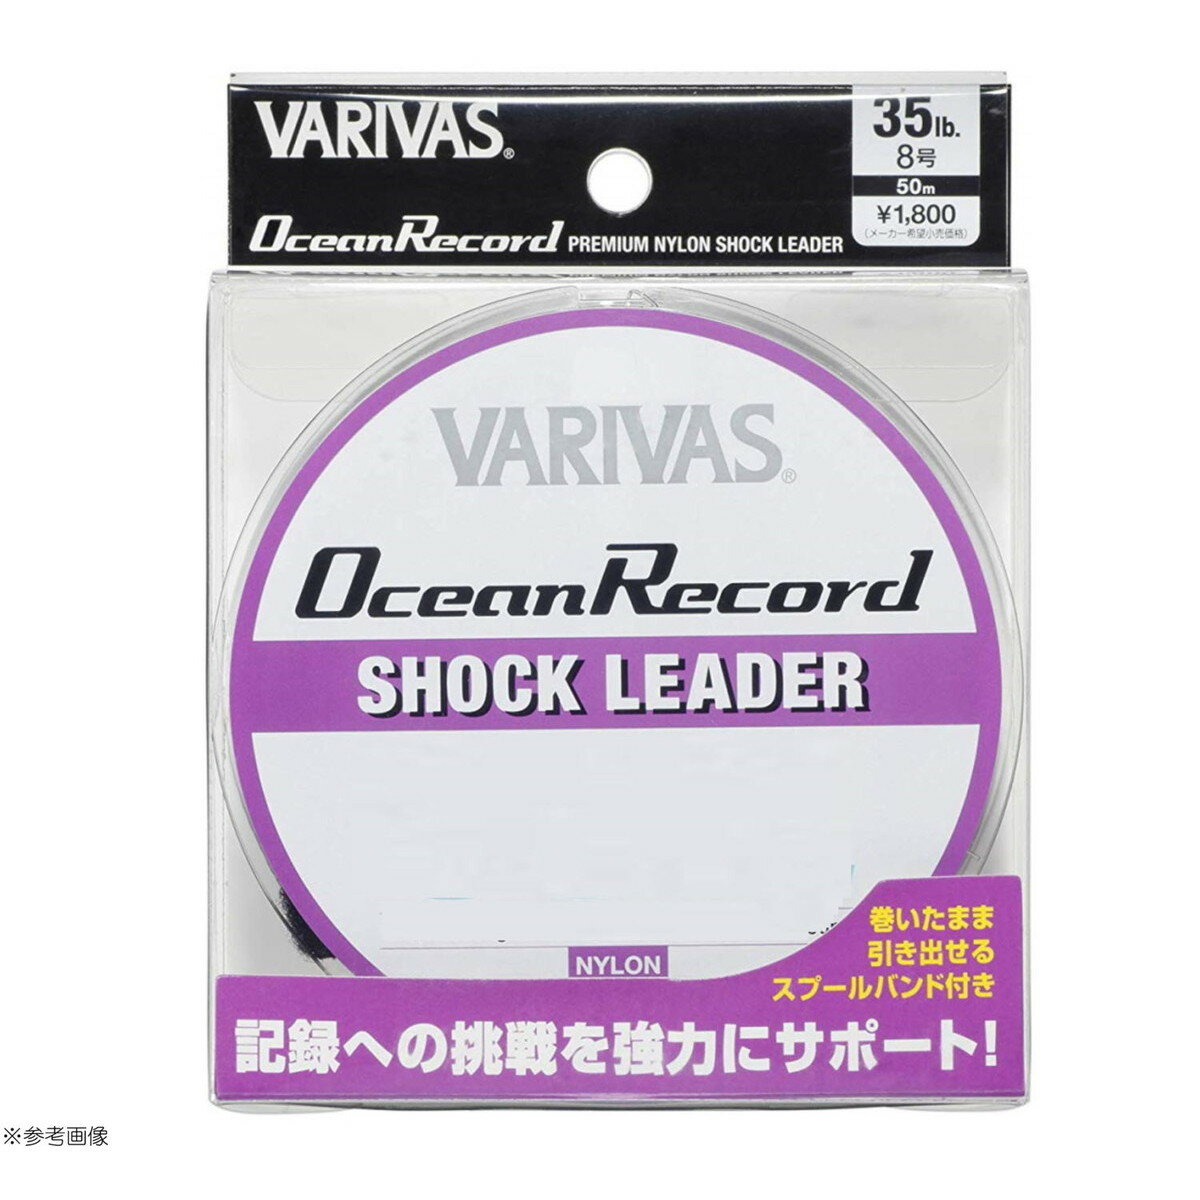 モーリス ライン VARIVAS オーシャンレコードショックリーダー 50m 35LB(8号) 4